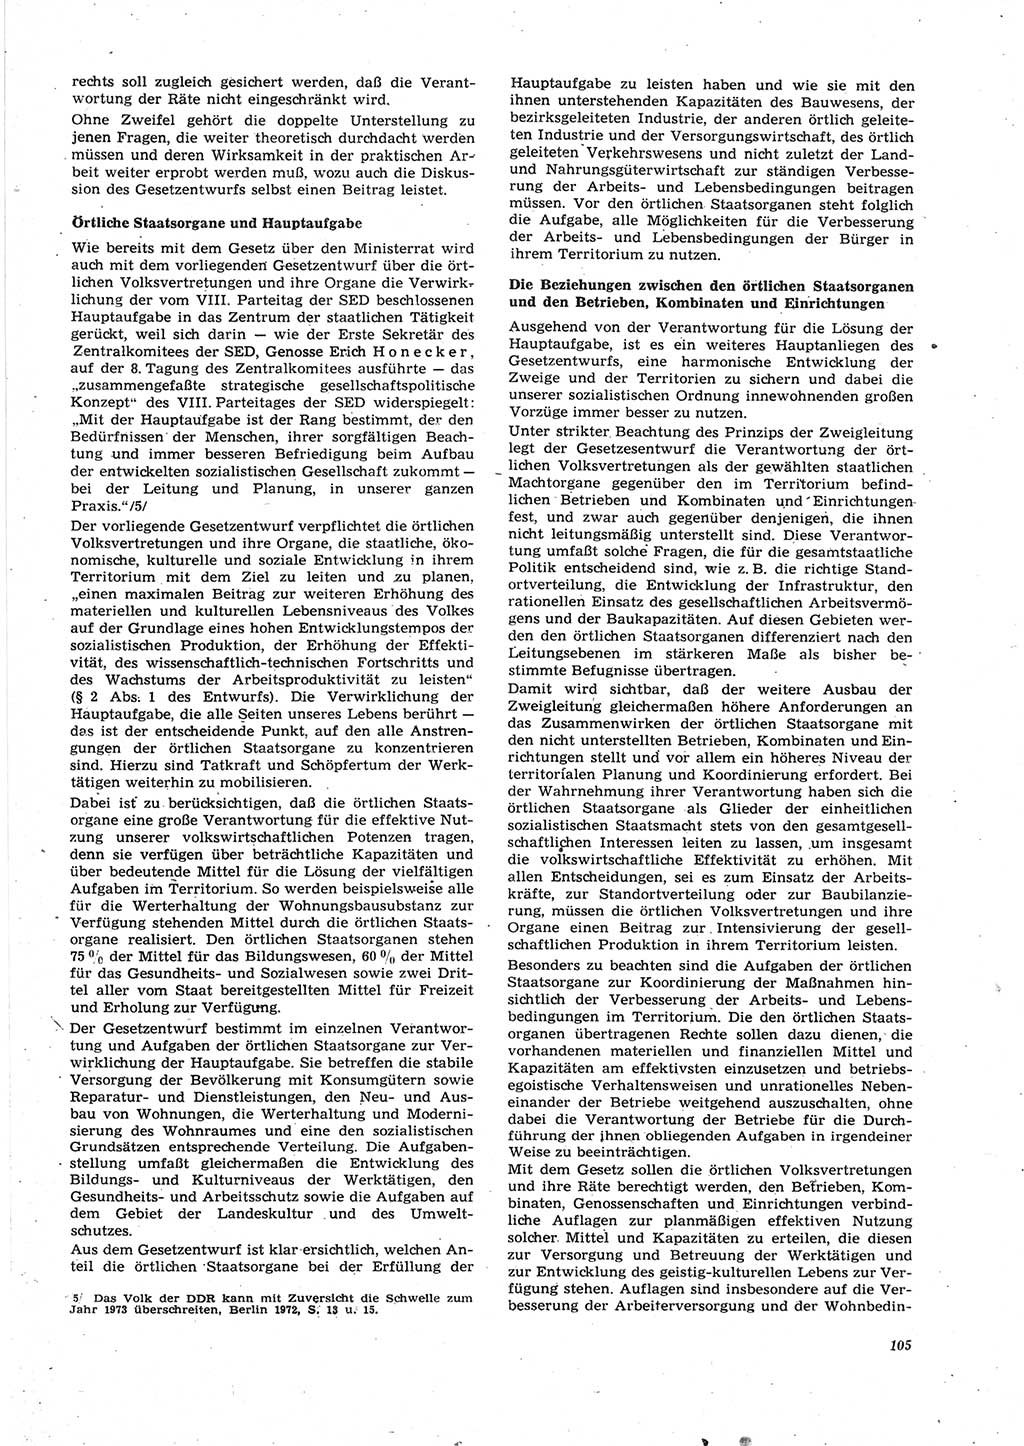 Neue Justiz (NJ), Zeitschrift für Recht und Rechtswissenschaft [Deutsche Demokratische Republik (DDR)], 27. Jahrgang 1973, Seite 105 (NJ DDR 1973, S. 105)